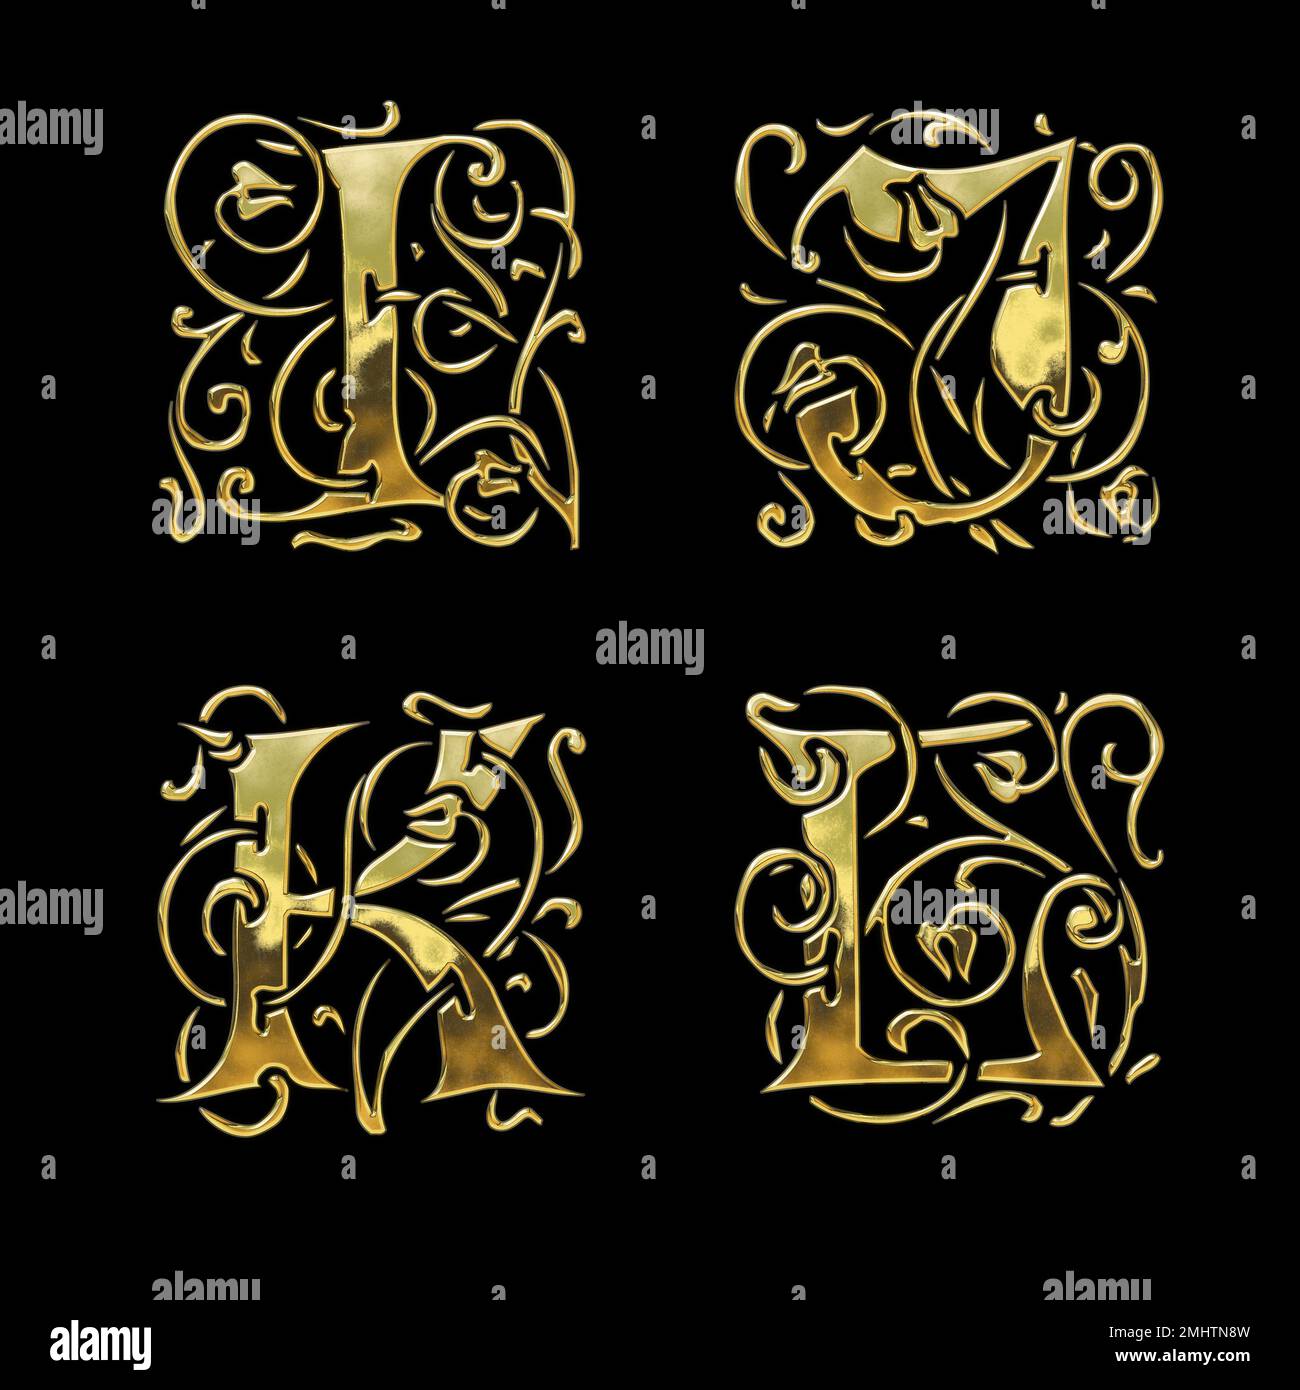 3D rendu de l'alphabet de police de style gothique doré - lettres I-L Banque D'Images